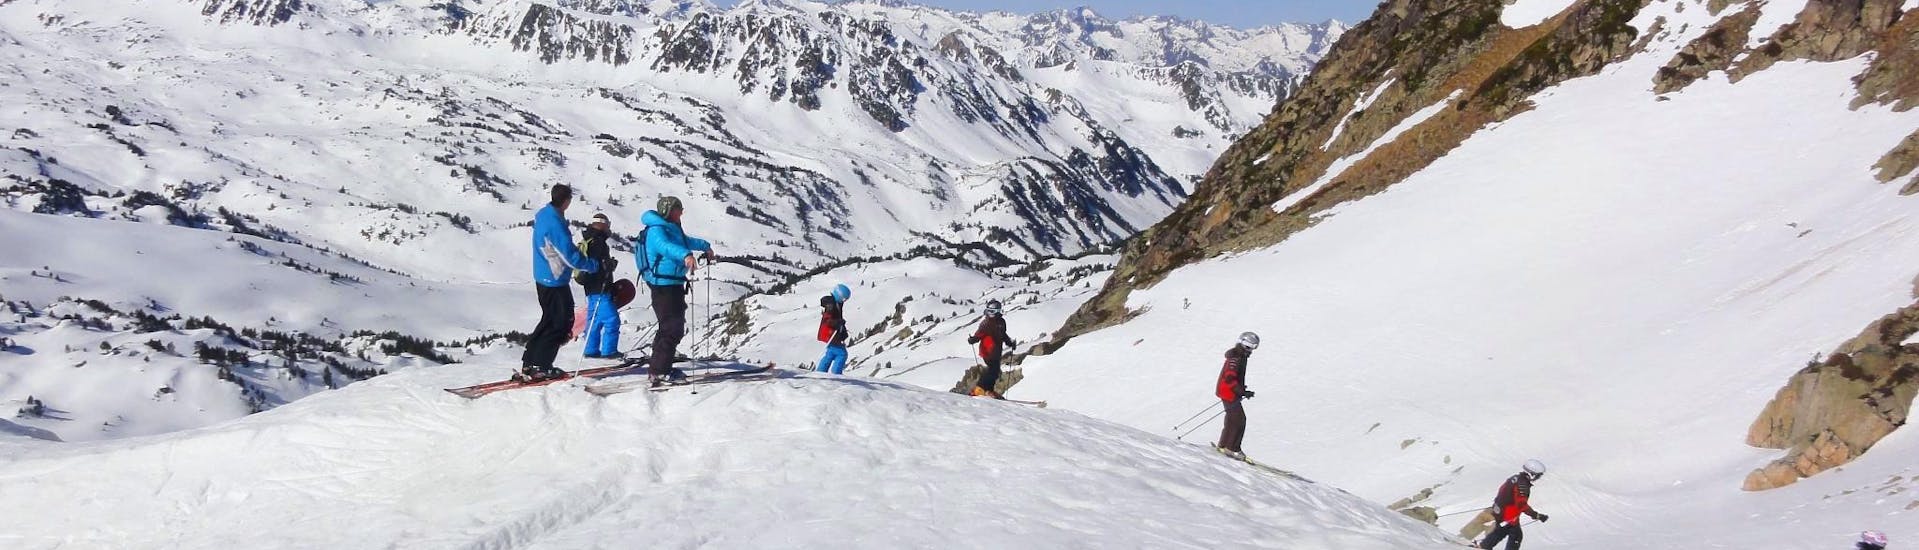 Kinder-Skikurs ab 5 Jahren für Fortgeschrittene.